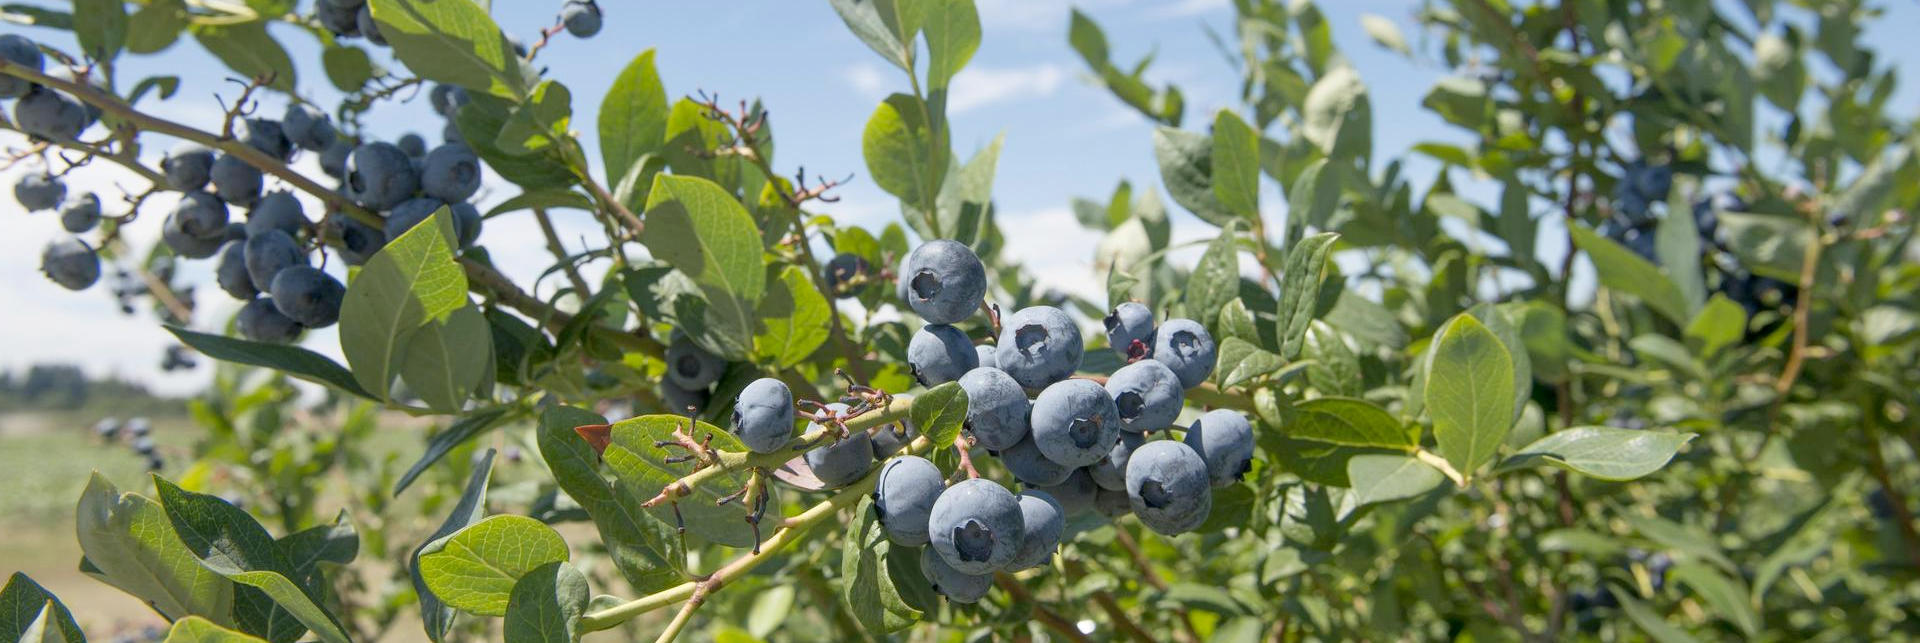 blueberries growing